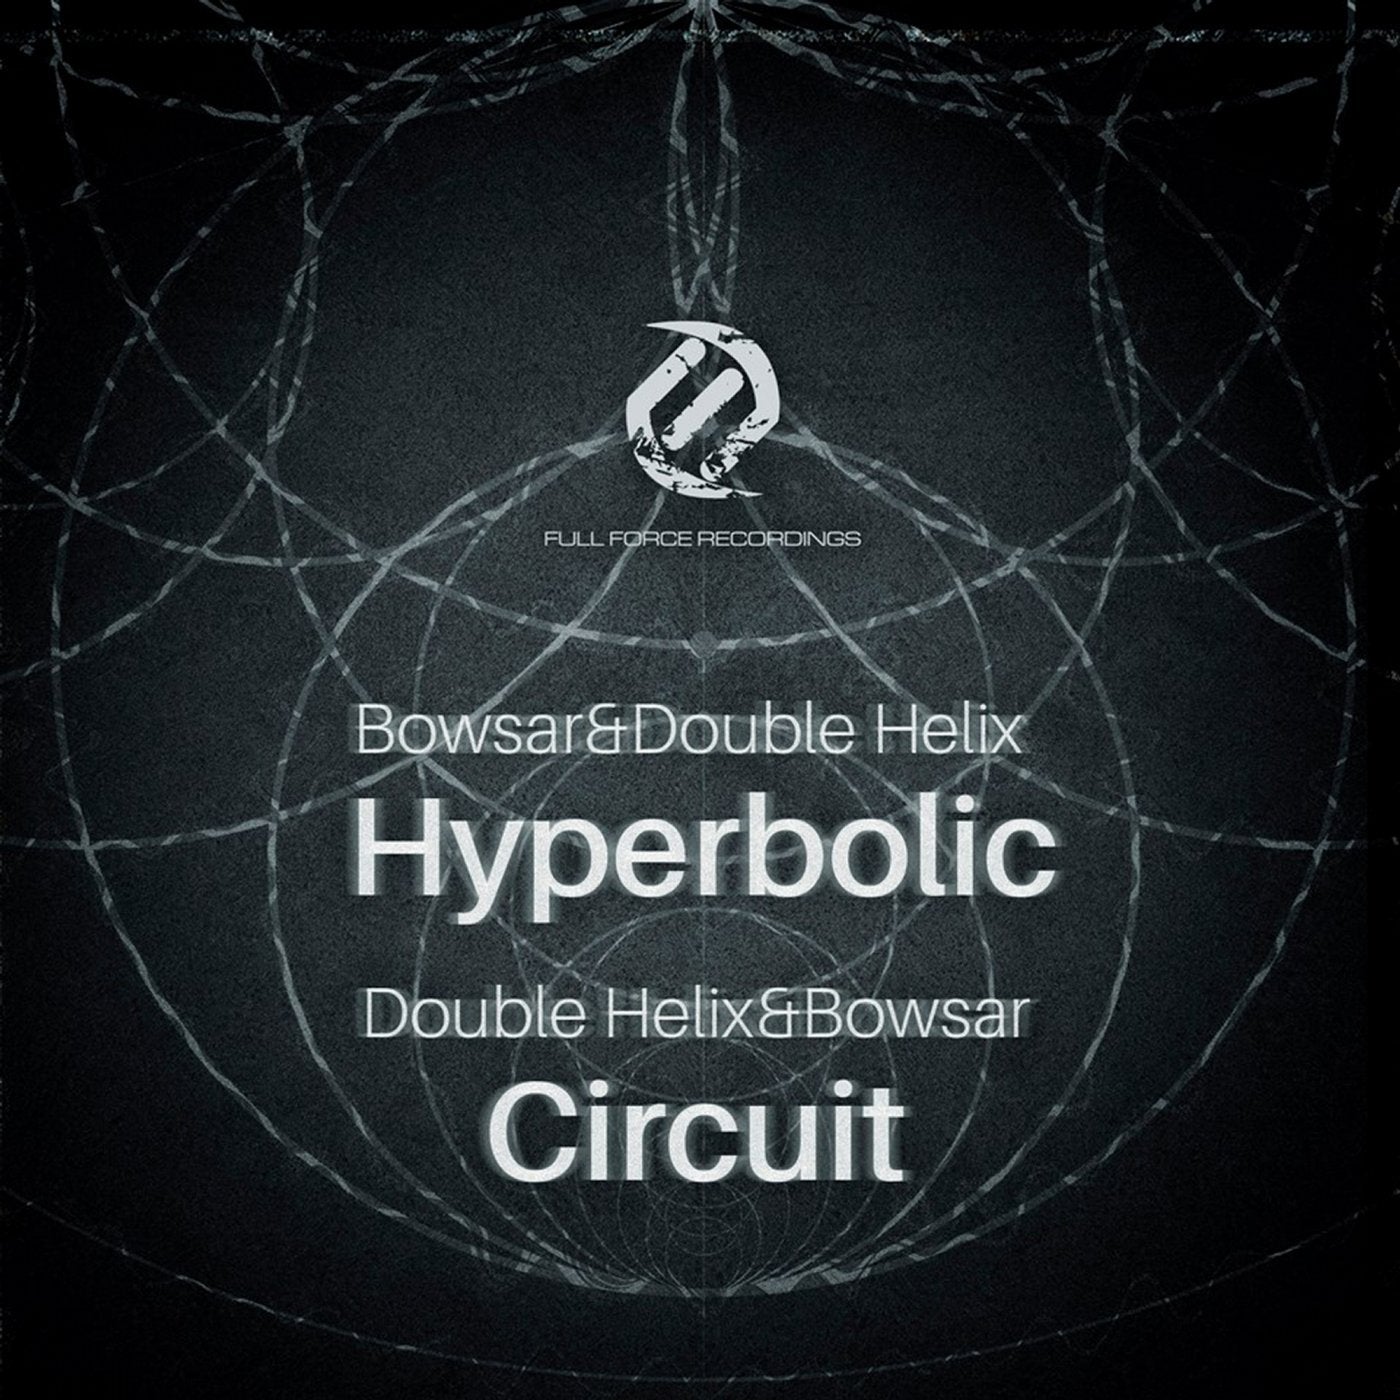 Hyperbolic